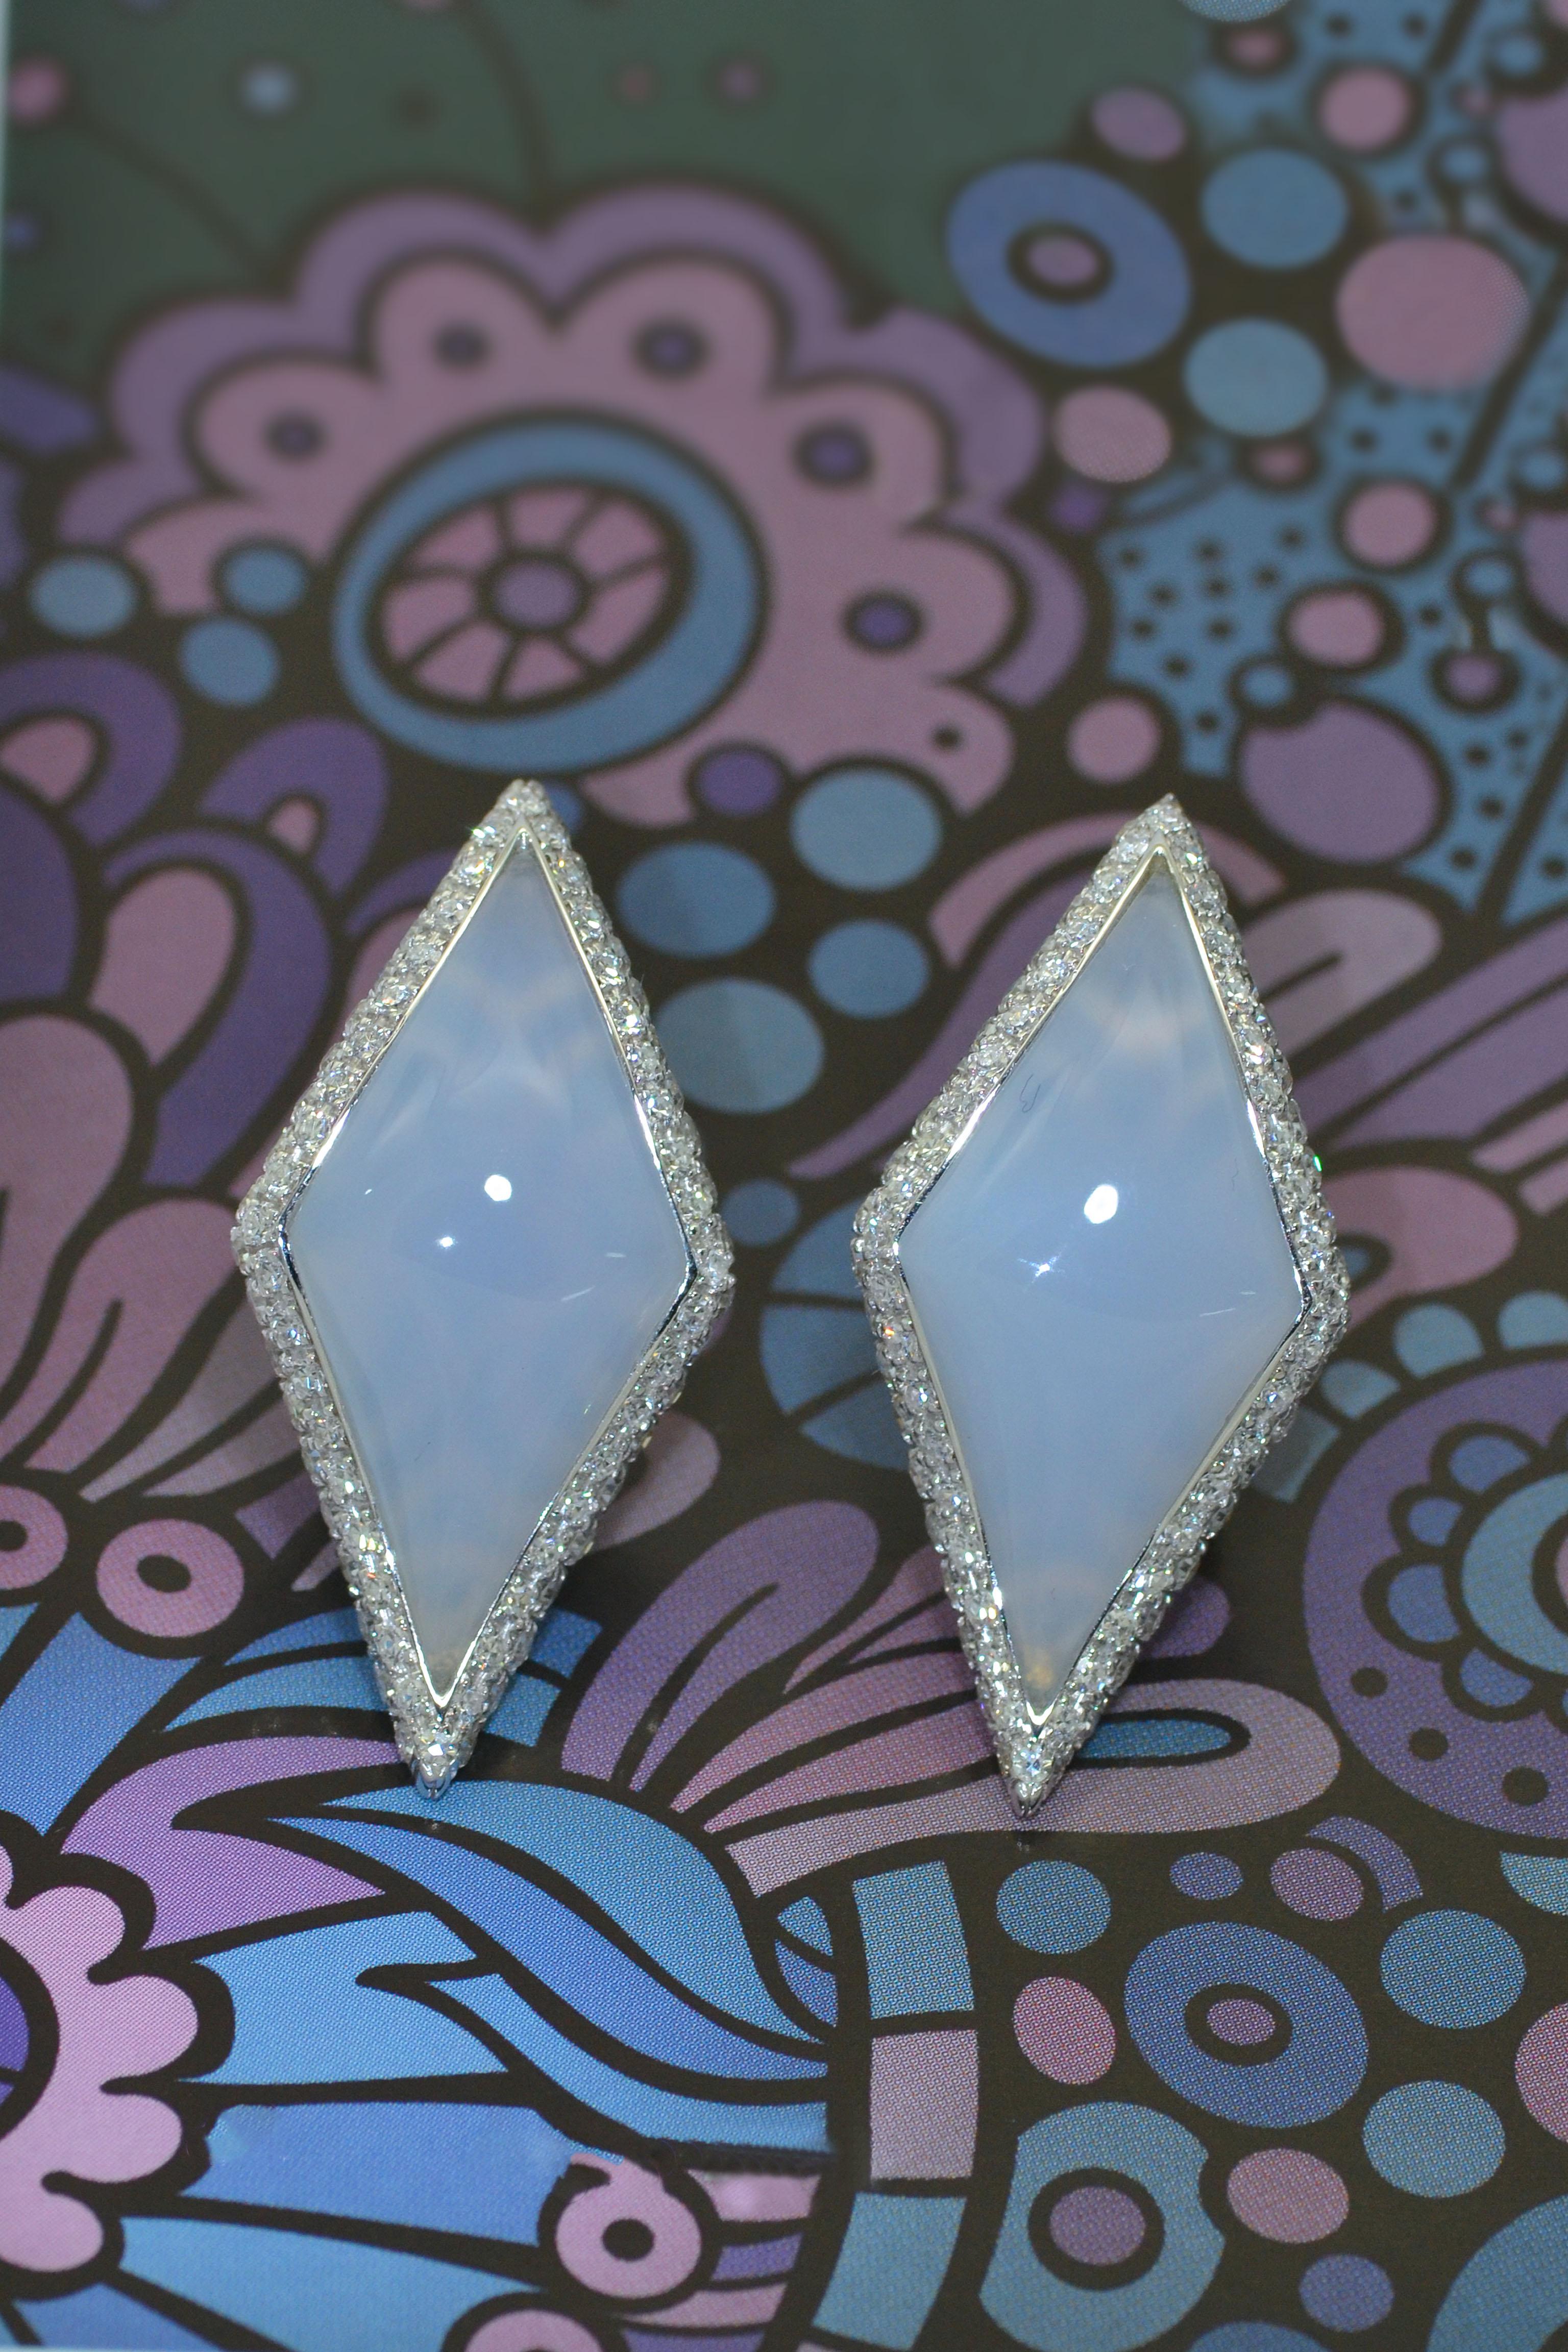 Handgefertigt in der Familie Margherita  Workshop,  Italien, diese Ohrringe sind schick und einzigartig.
Rhombusförmiger, natürlicher blauer Chalzedon, umgeben von Diamanten in Pavé-Fassung, kann als Kletterohrring getragen werden. 
Sie sind leicht